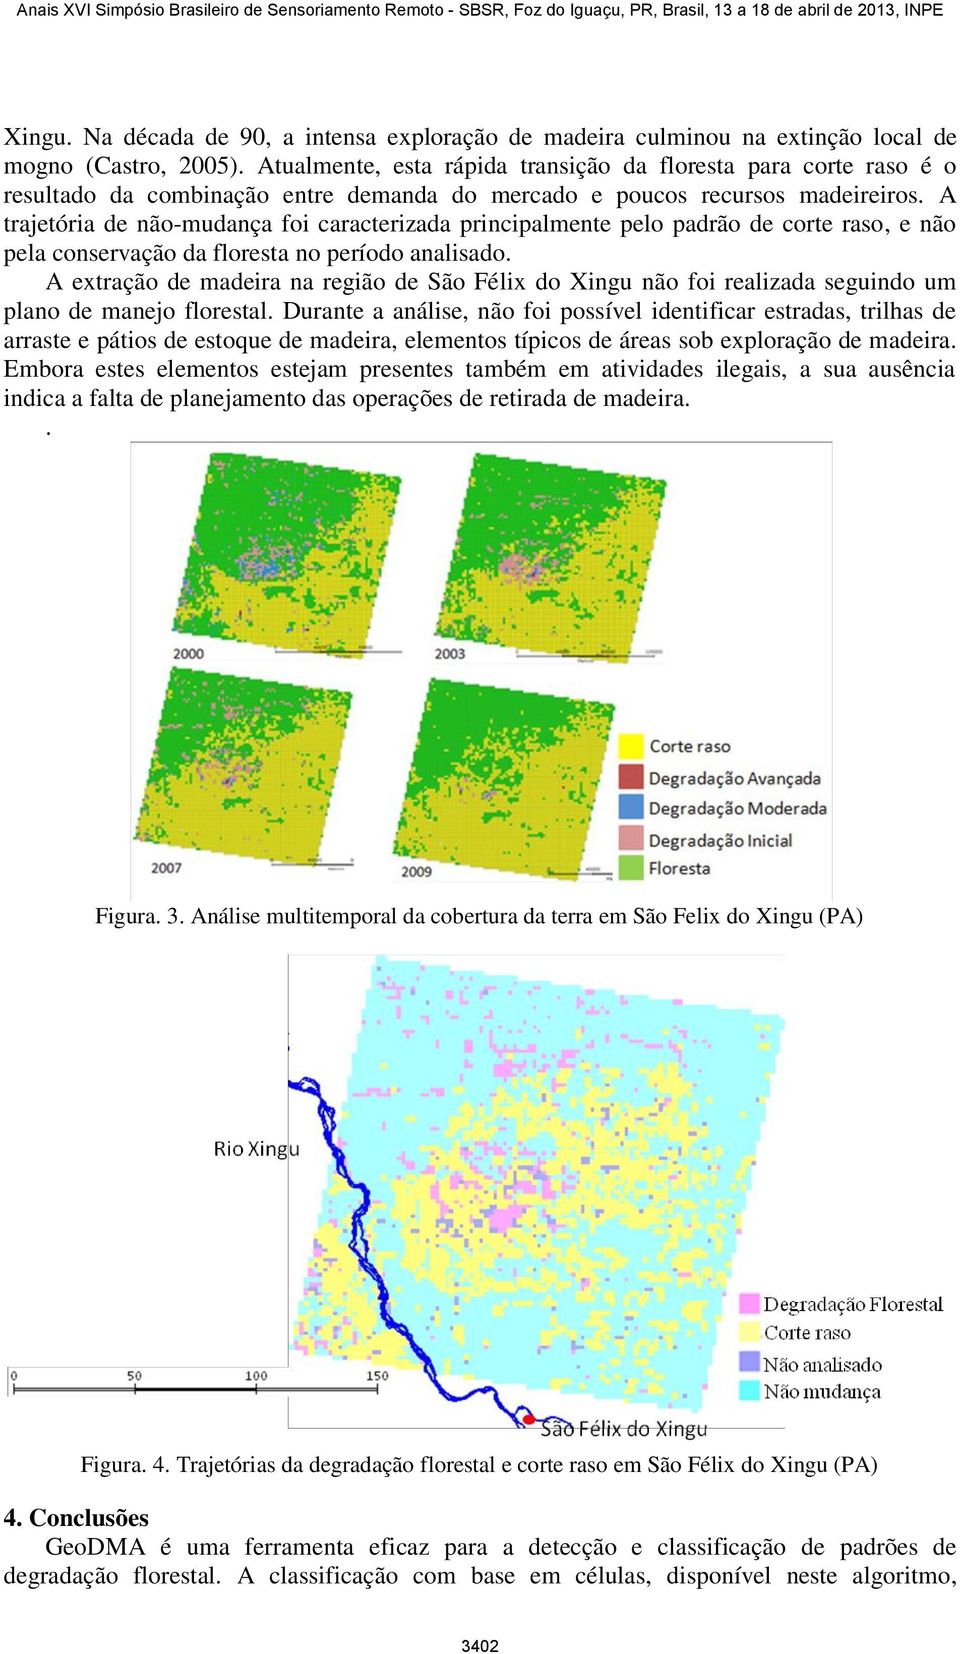 A trajetória de não-mudança foi caracterizada principalmente pelo padrão de corte raso, e não pela conservação da floresta no período analisado.